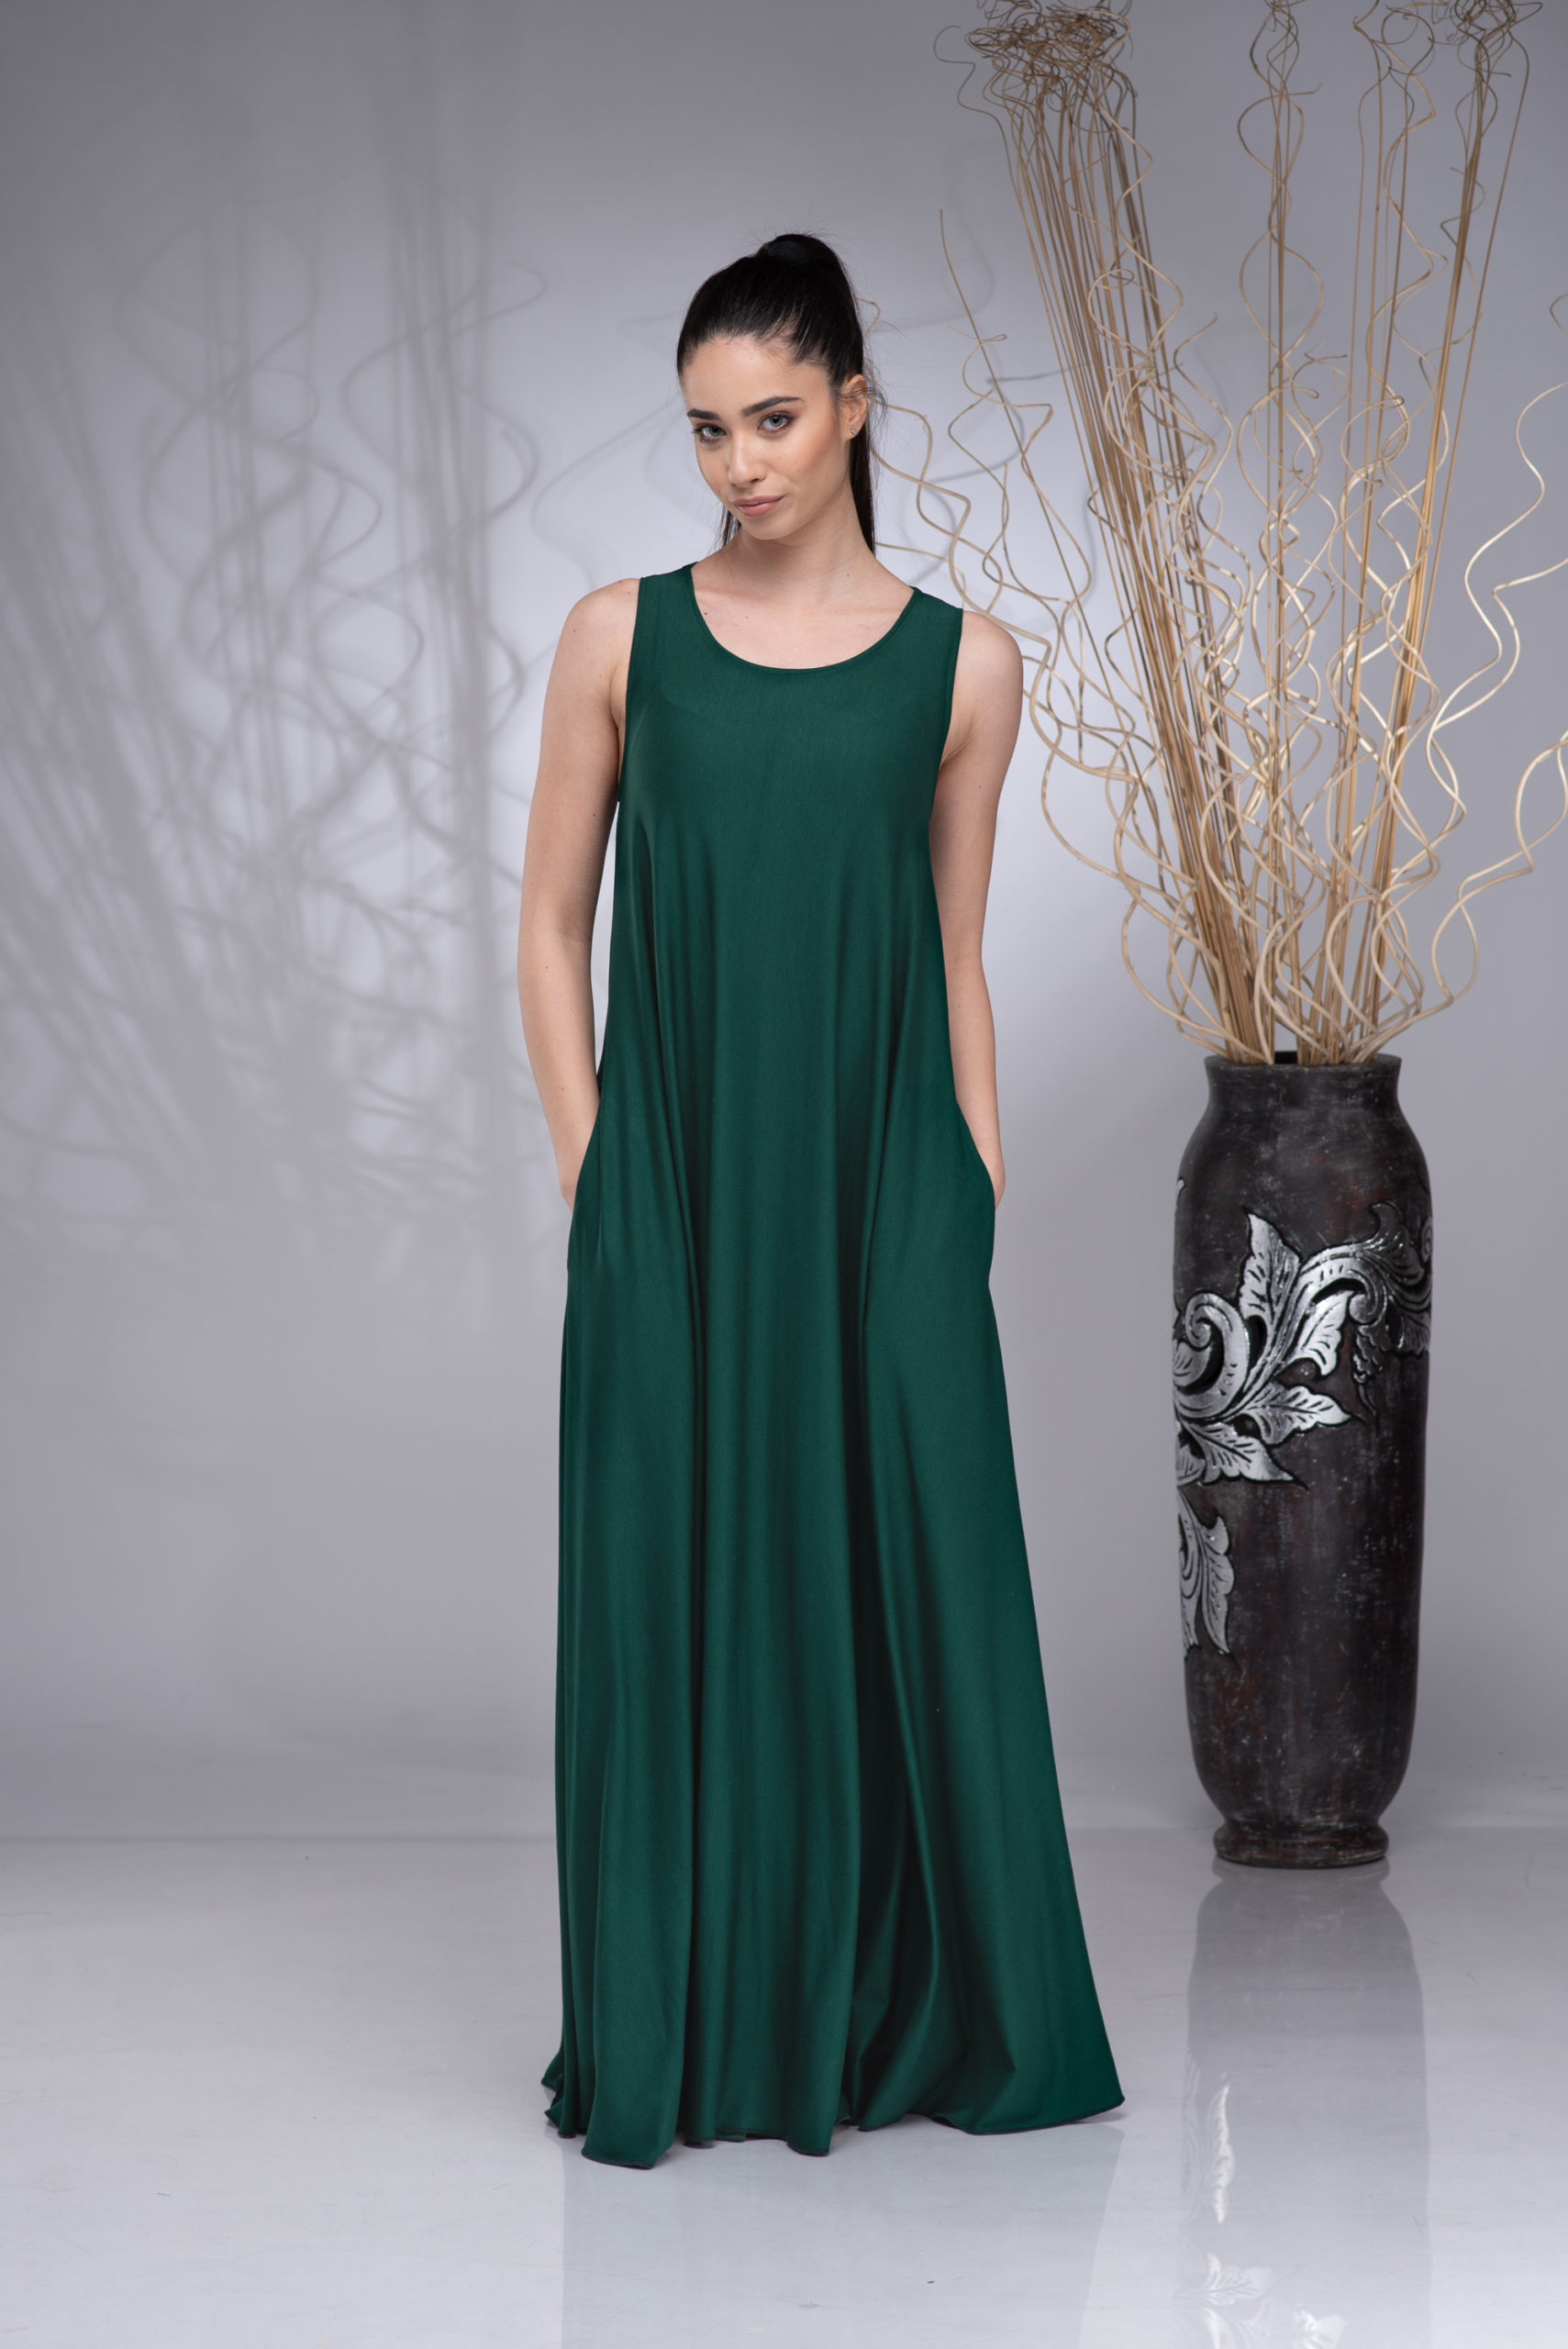 green dresses for women